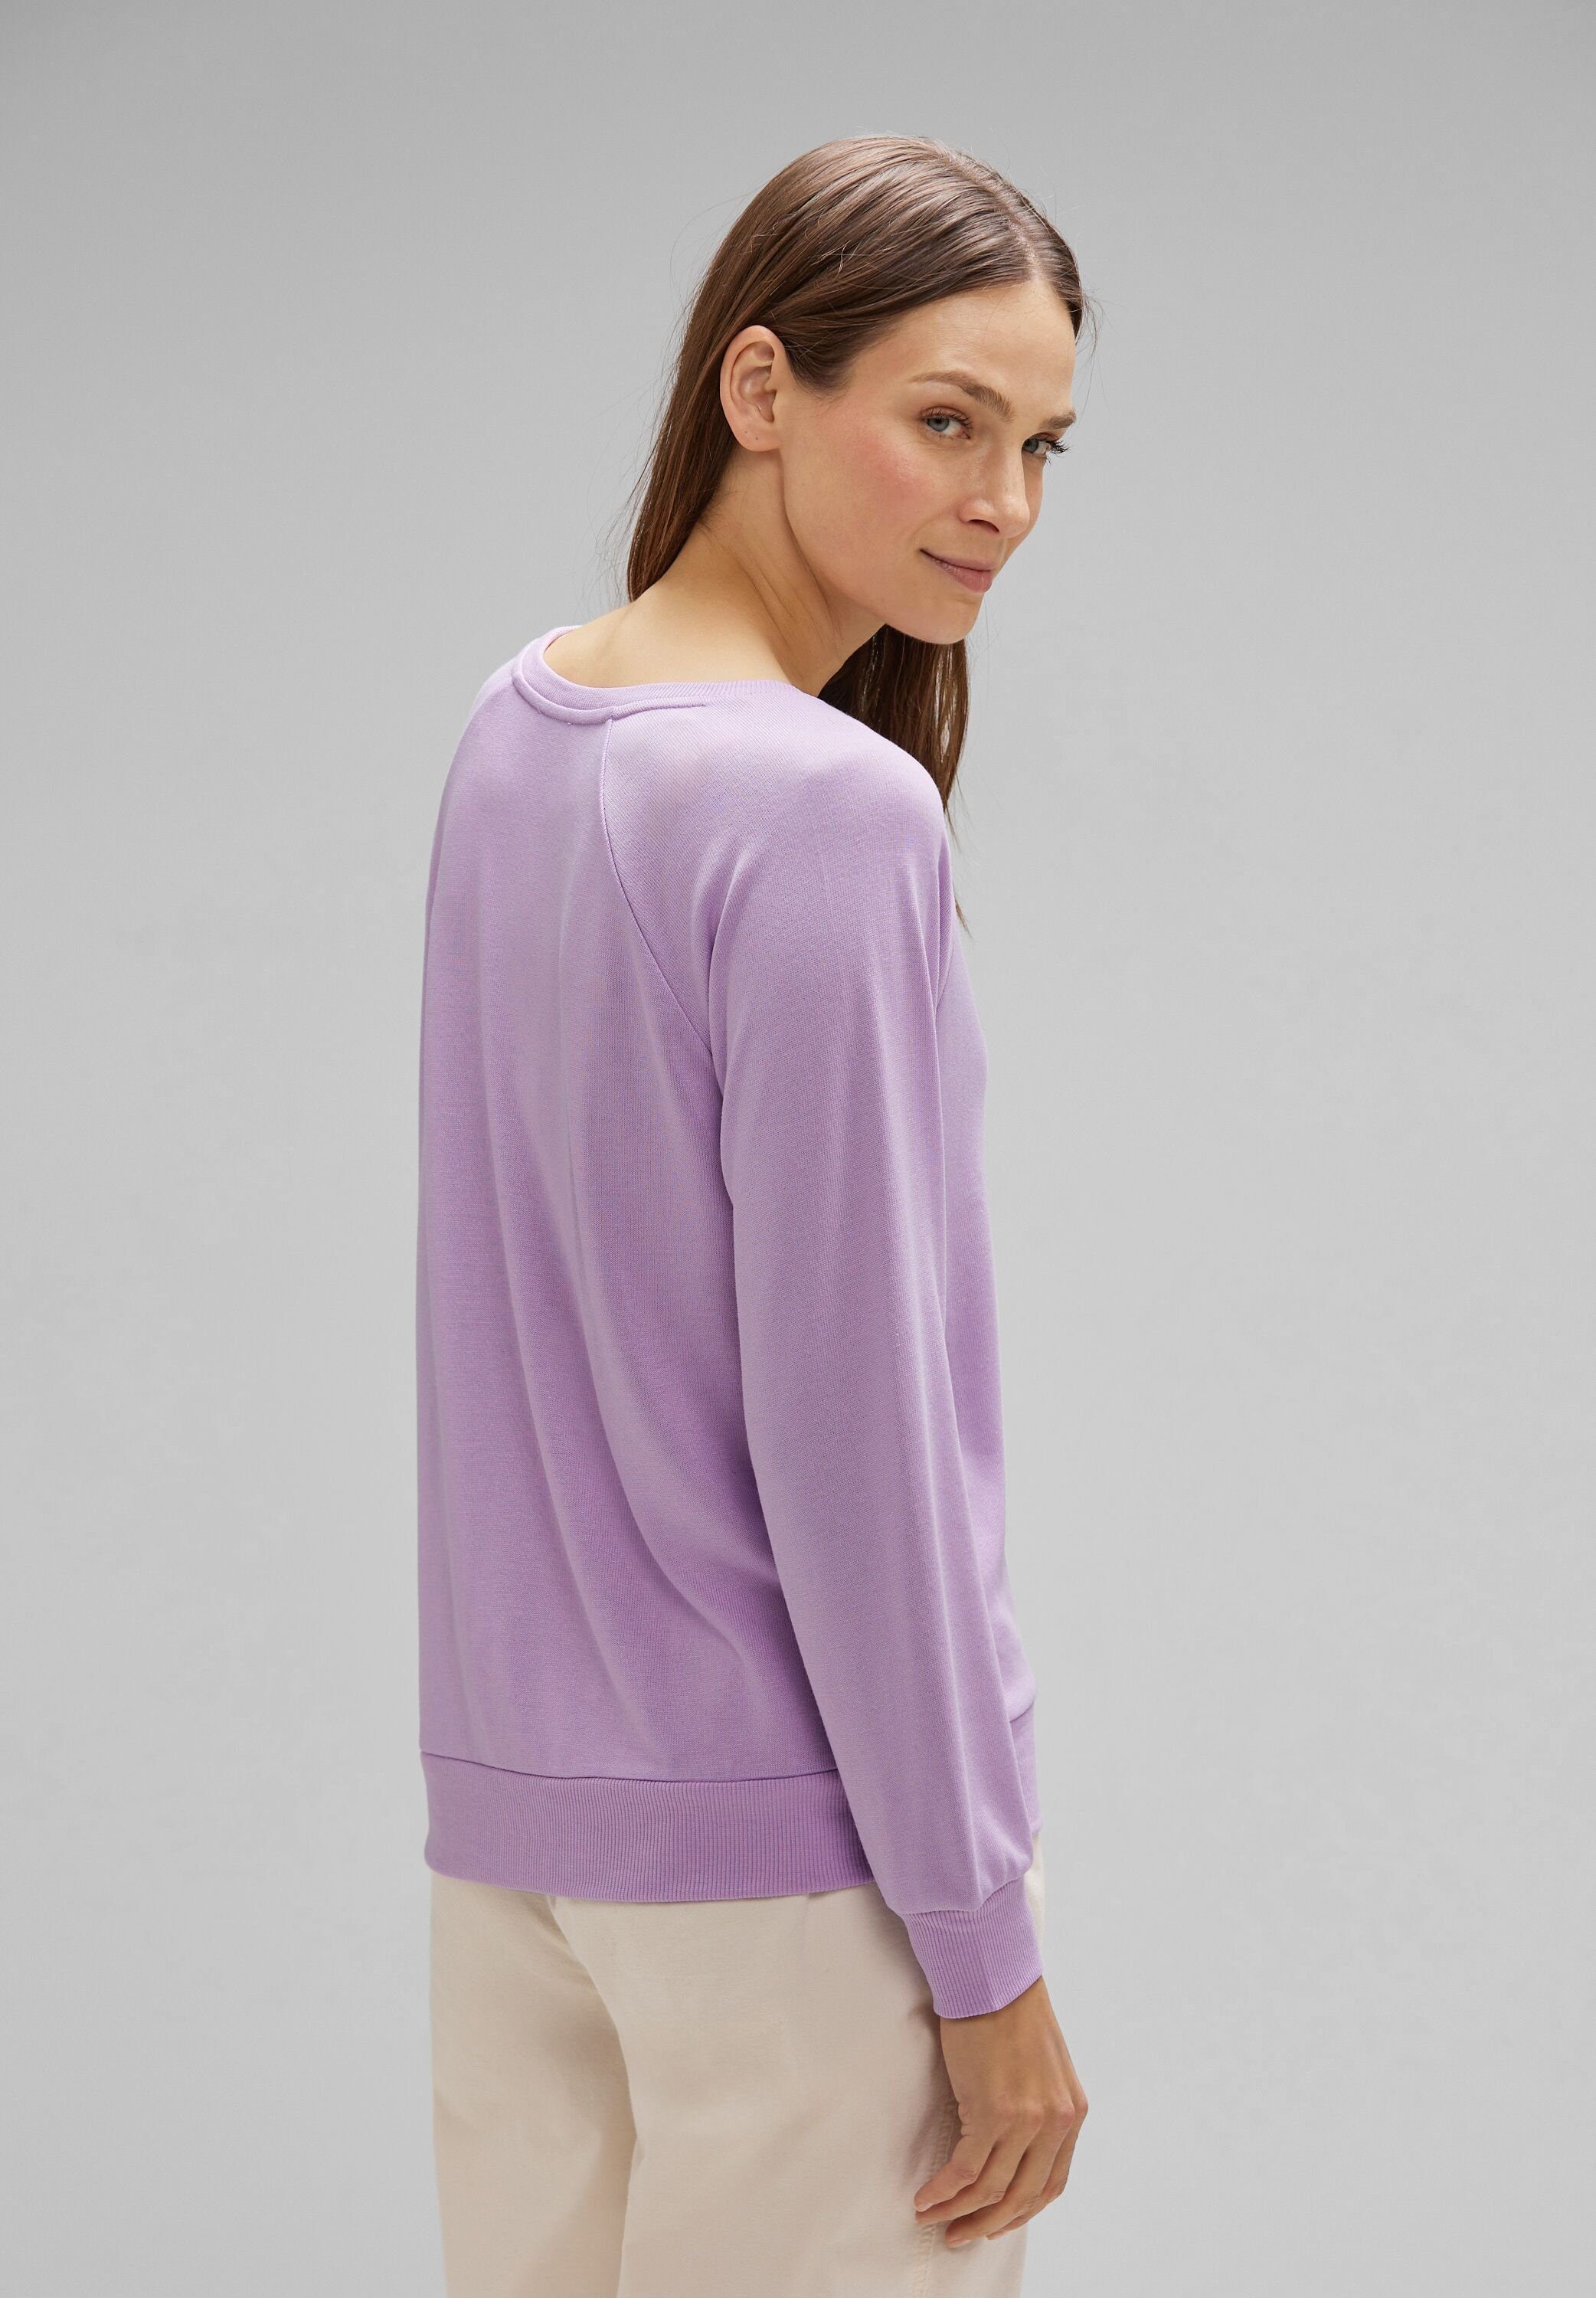 abgerundetem STREET V-Ausschnitt pure lilac V-Shirt soft mit ONE